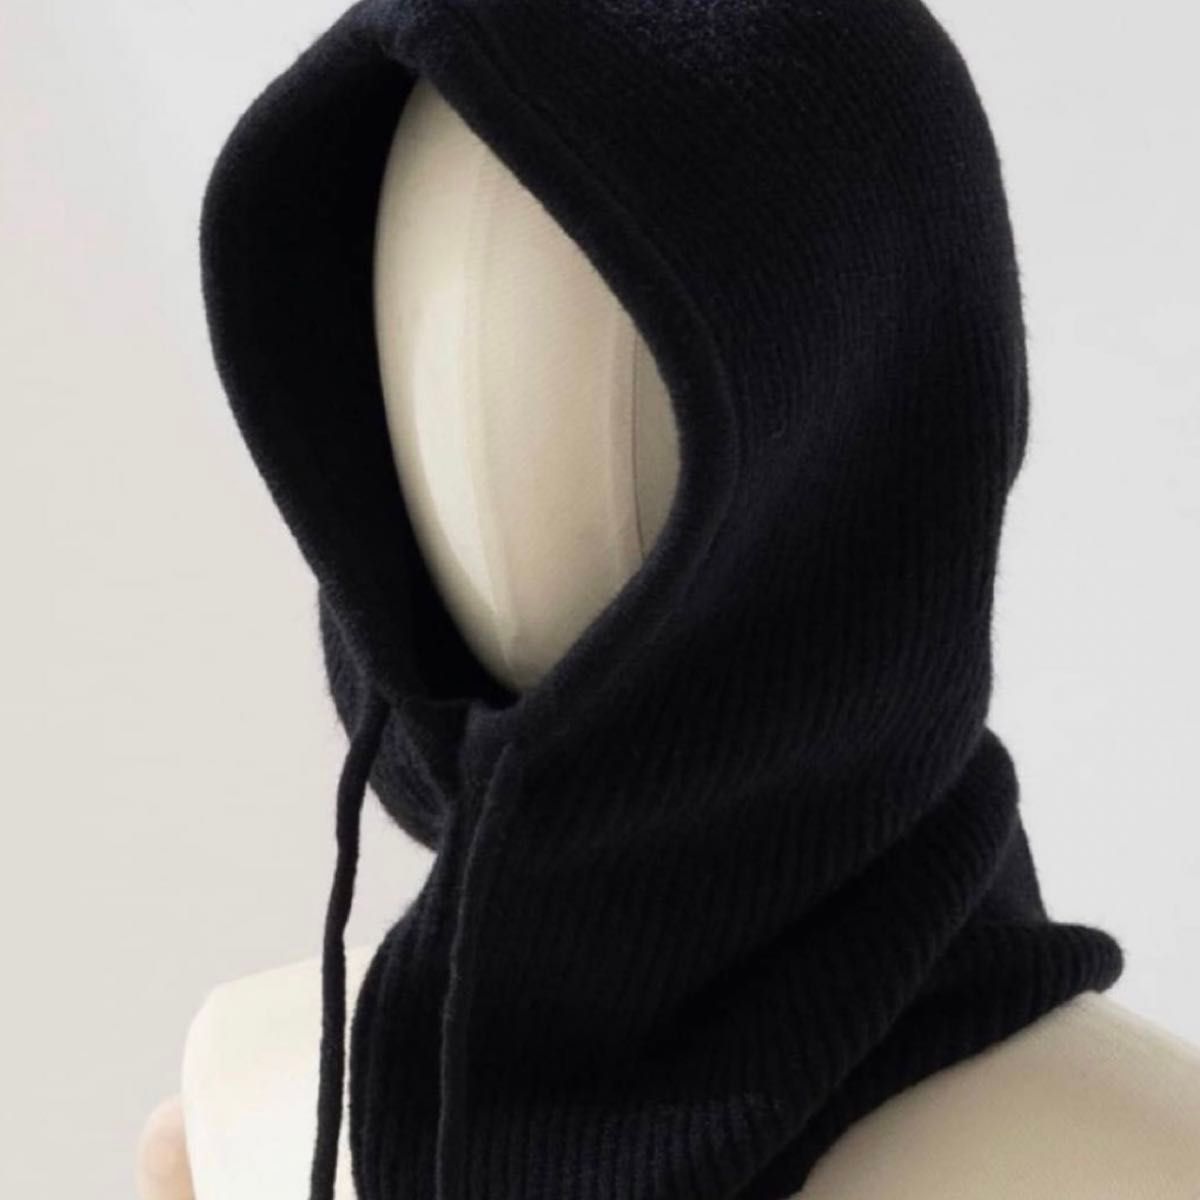 【ブラック】バラクラバ フード 帽子 韓国 流行り ニット ニット帽 防寒 ネックウォーマー ブラック  マフラー 冬 2way 